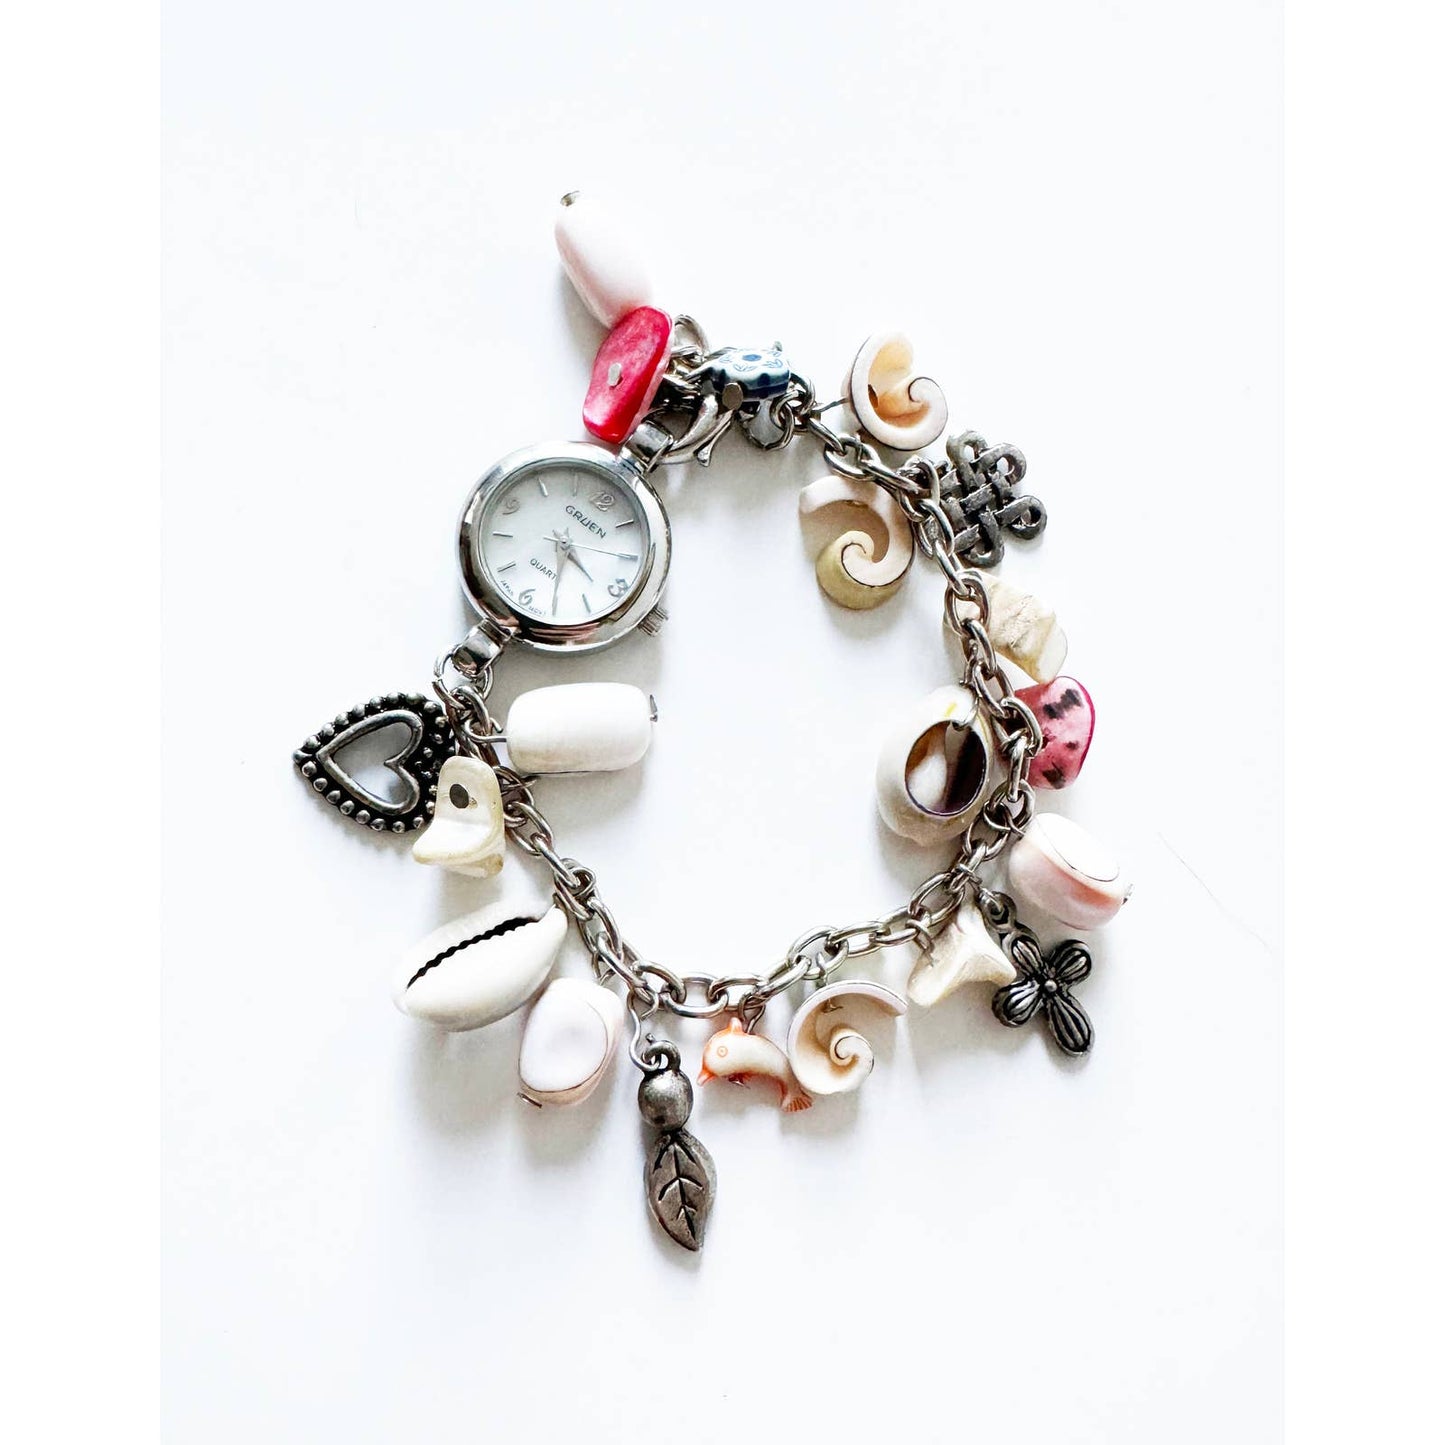 Vintage Silver Charm Bracelet Watch | Gruen